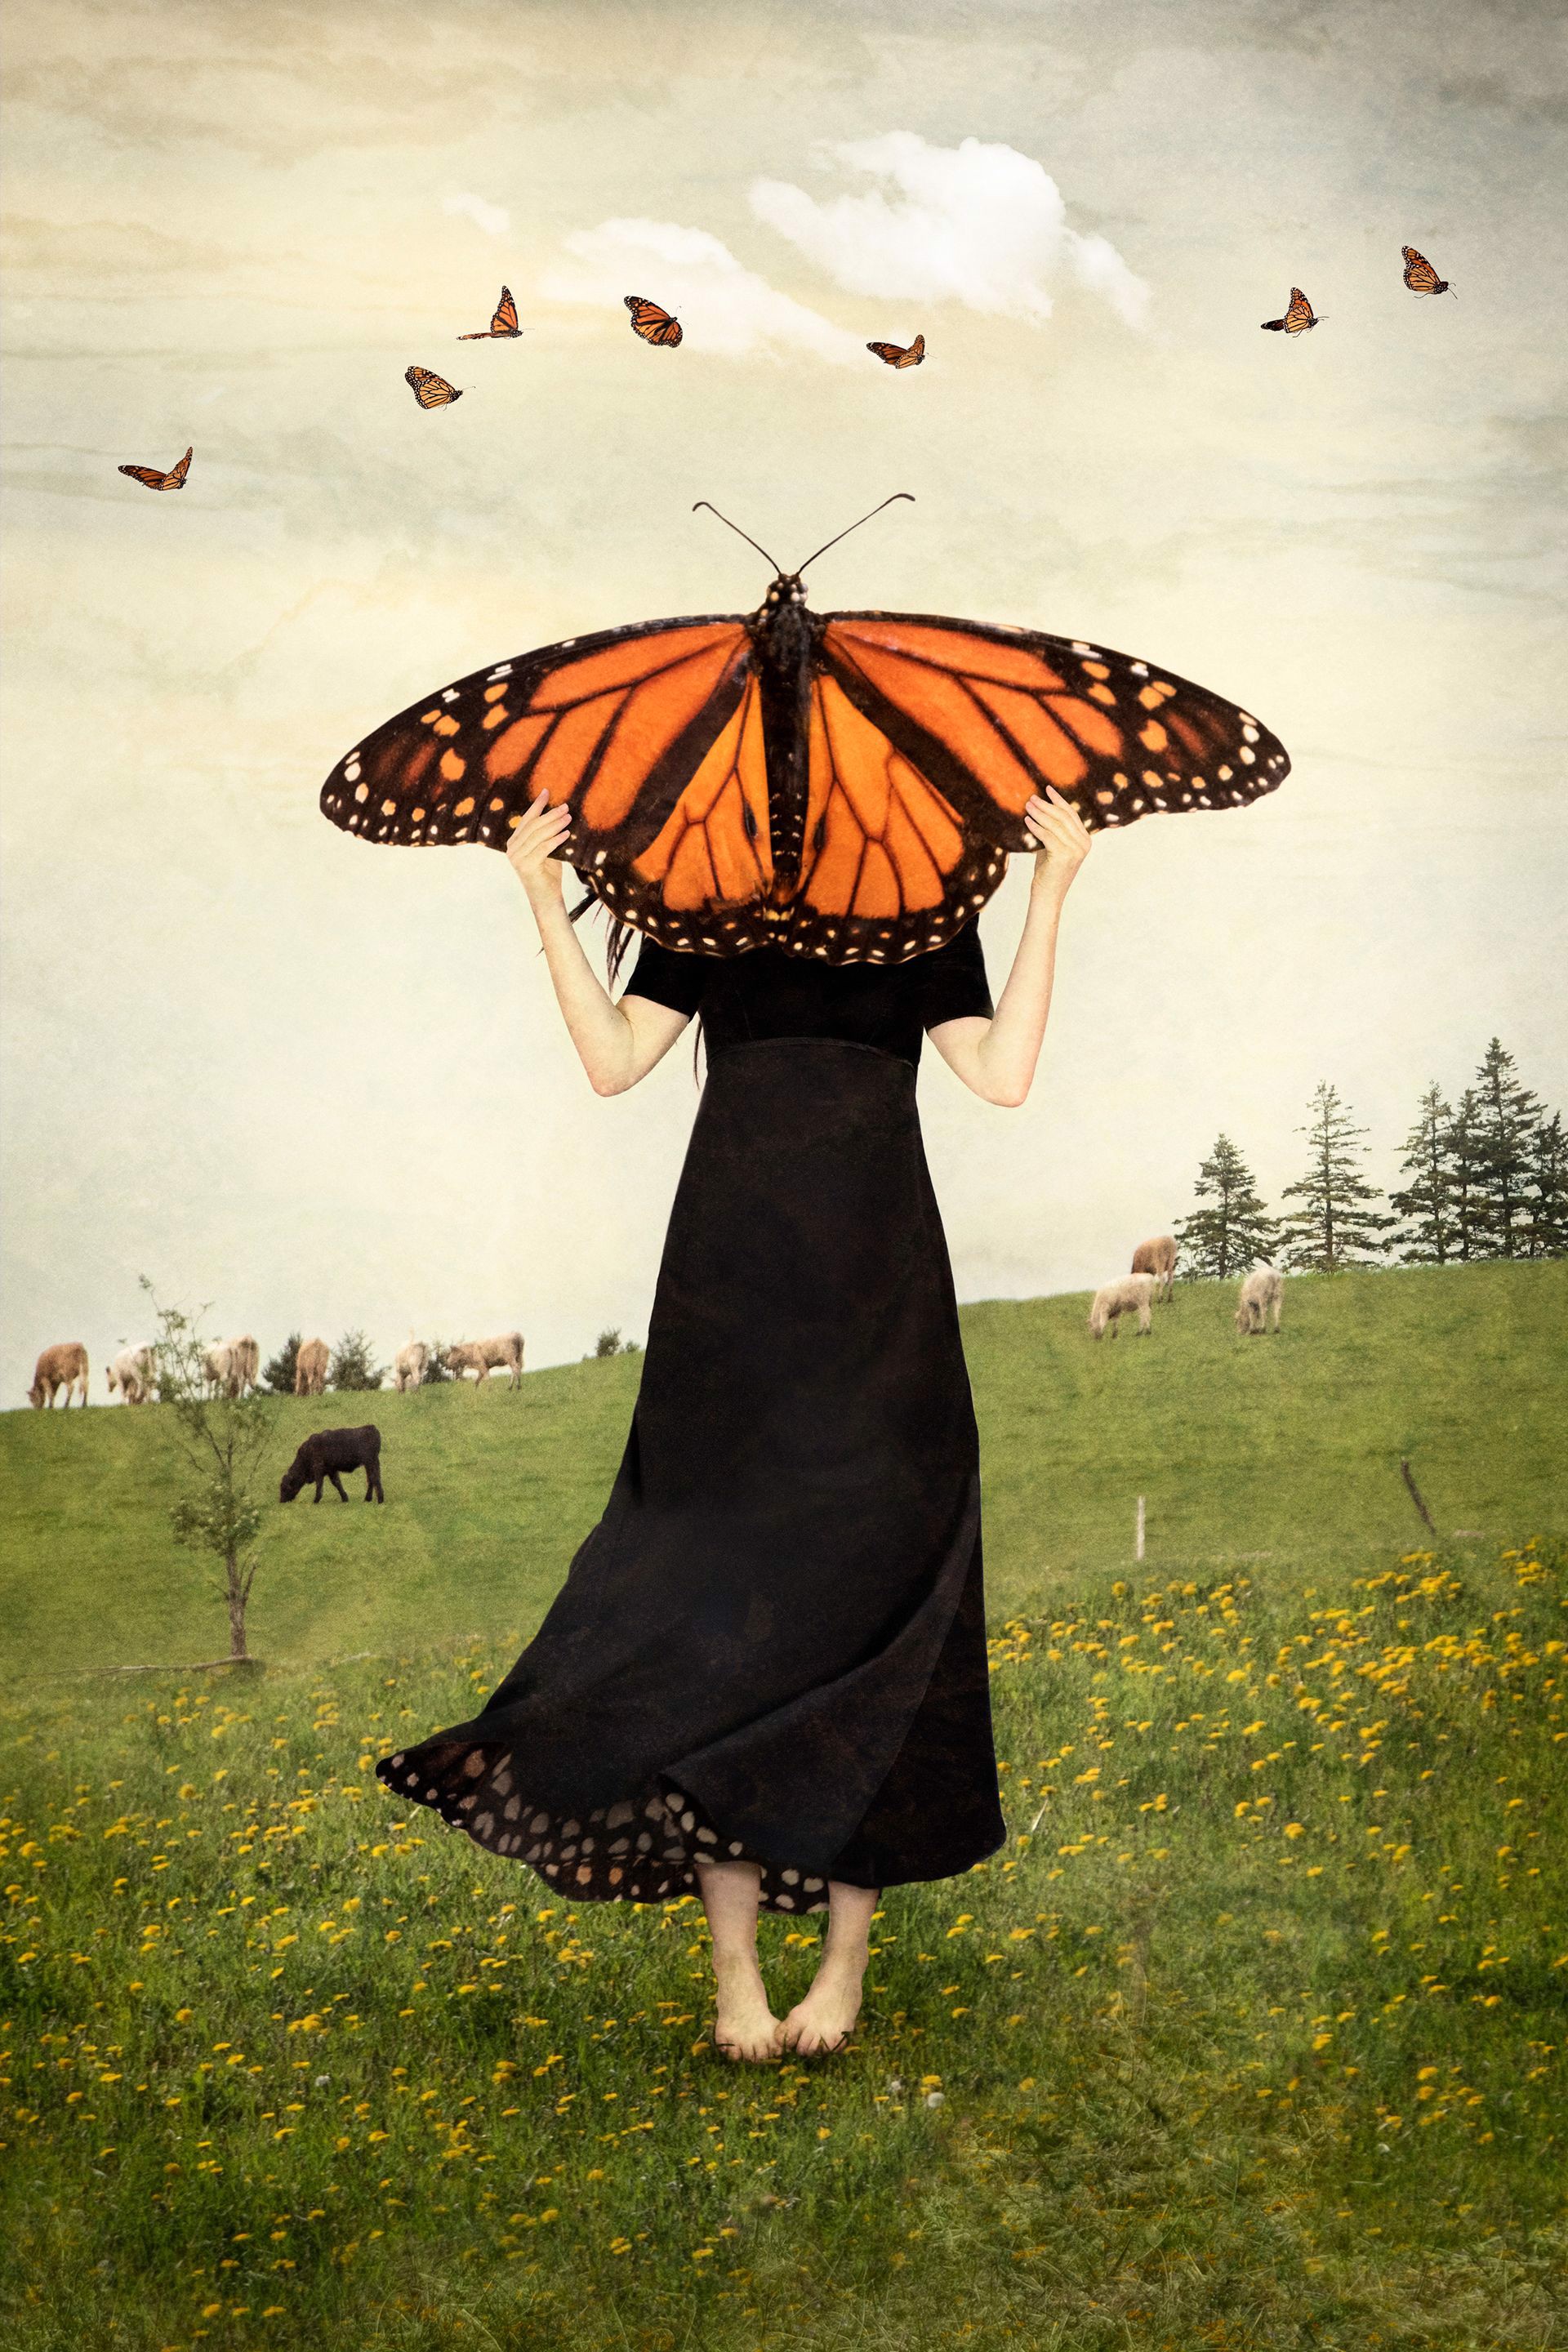 May Timid Wings Awaken by Elisabeth Ladwig